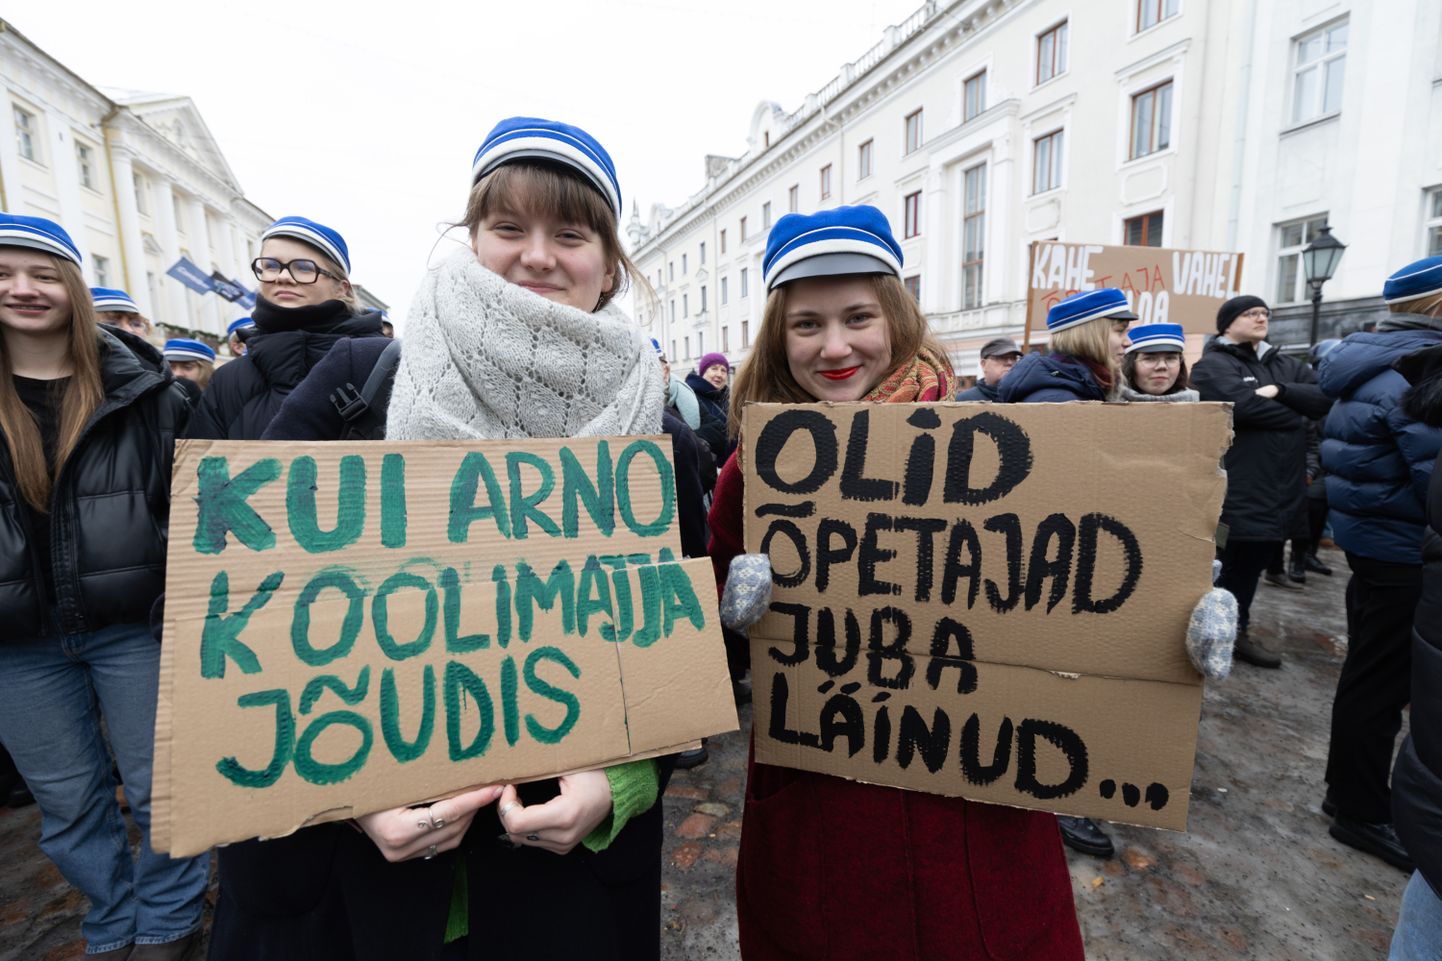 Tartlased avaldavad toetust streikivatele õpetajatele üle Eesti.